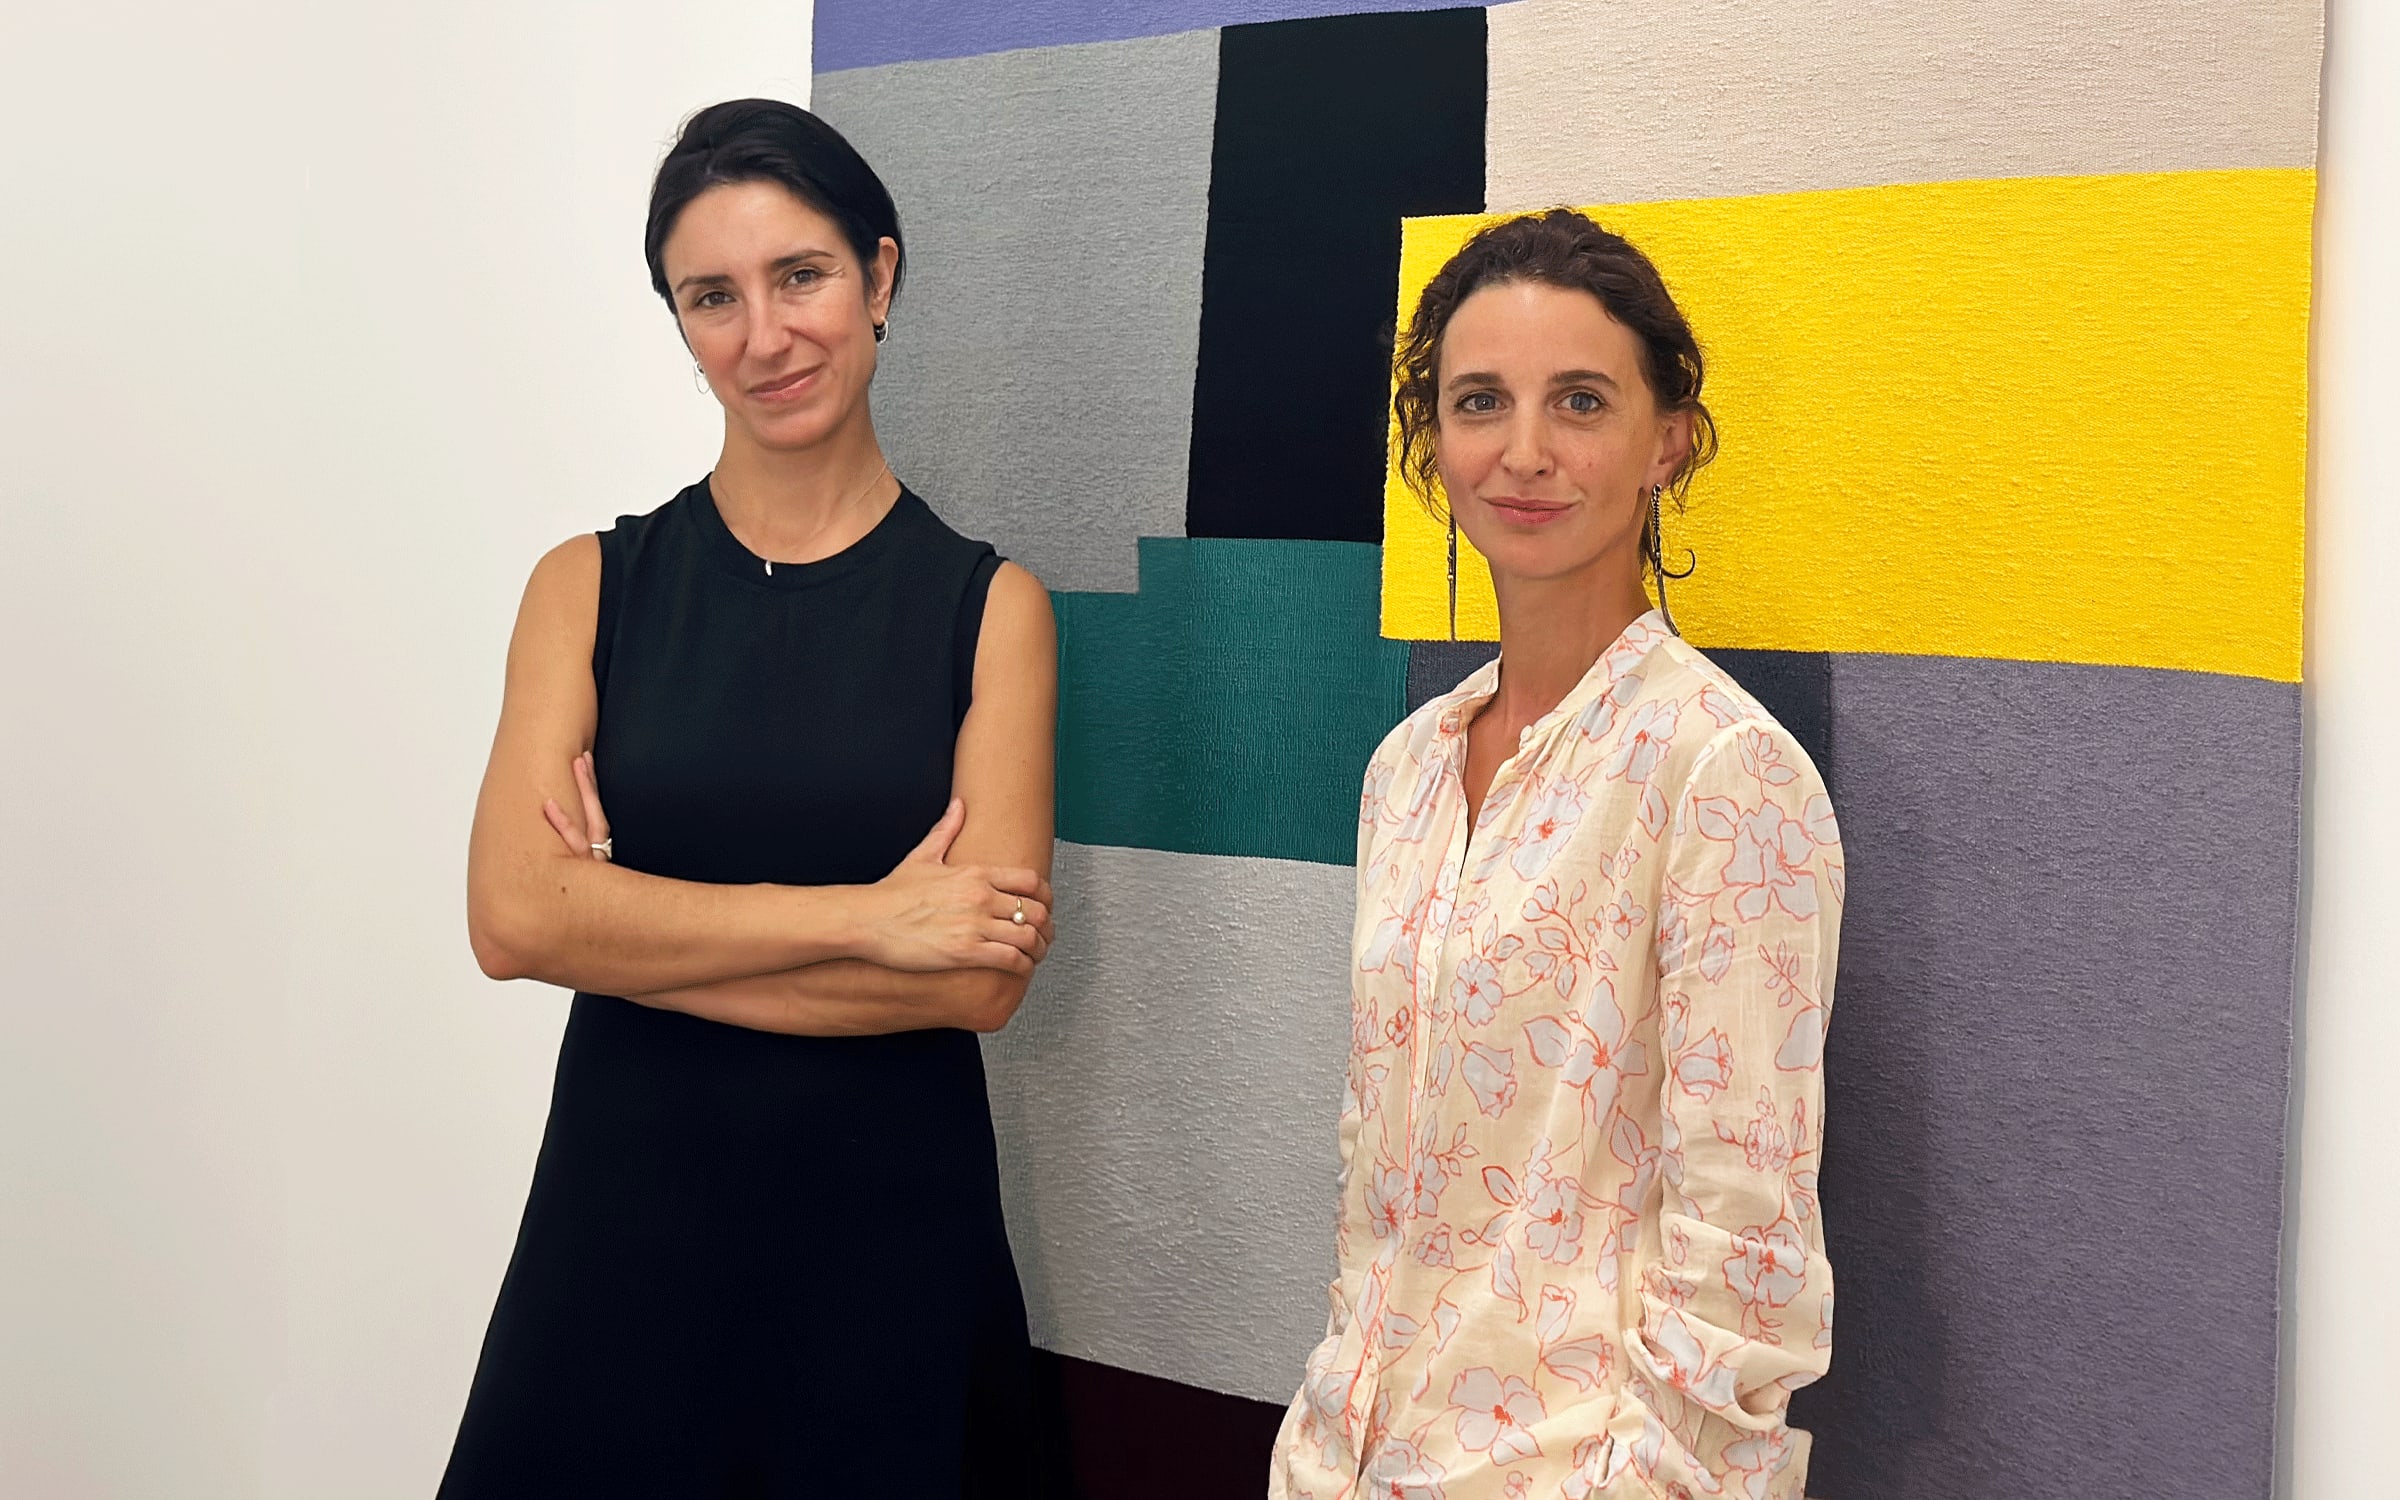 Julia Morandeira Arrizabalaga, director of KADIST Paris, and Sandra Terdjman, cofounder of KADIST. © KADIST.